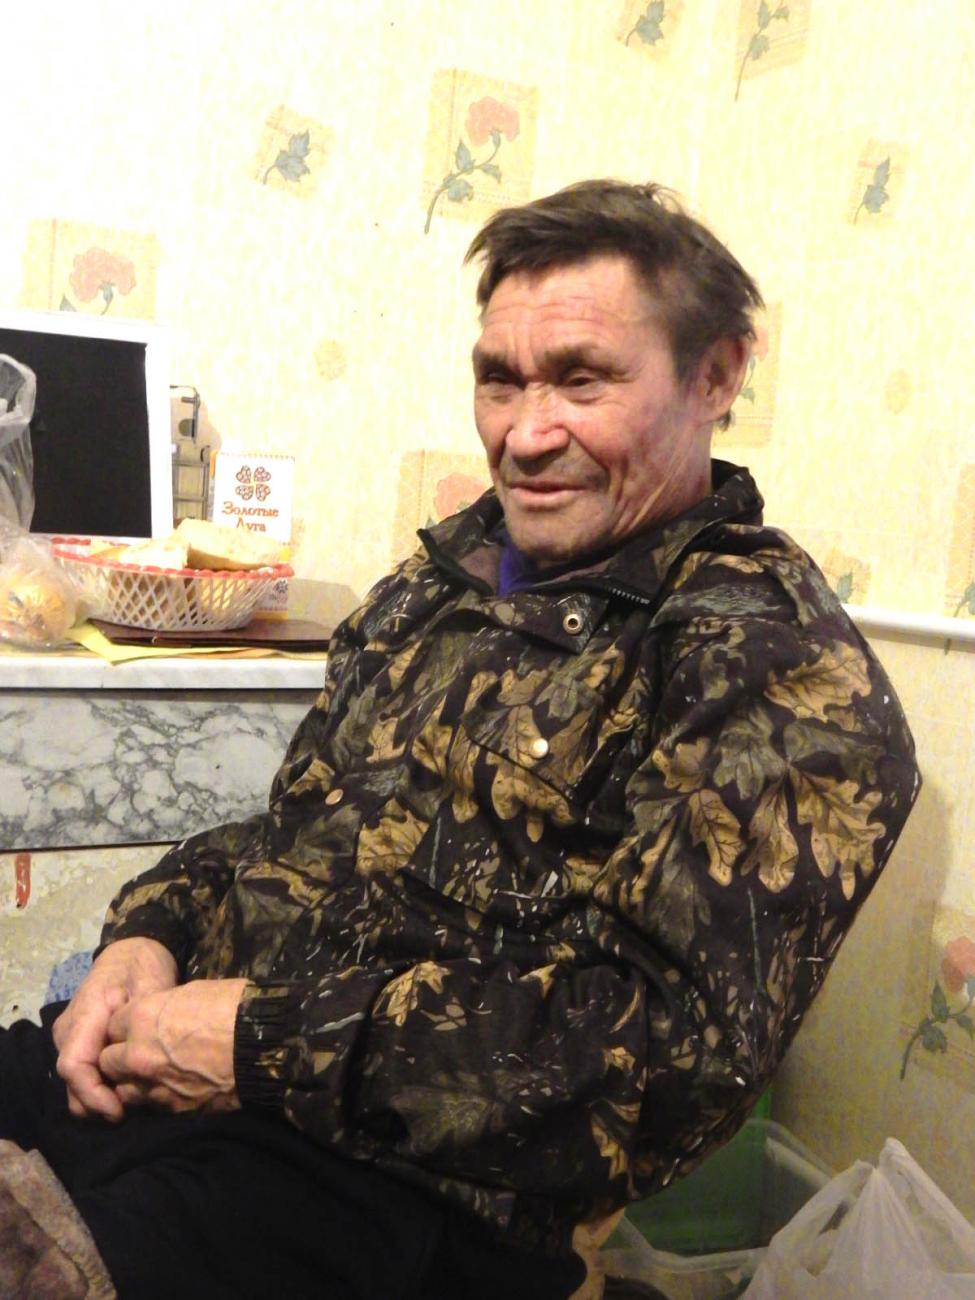 KVS at his home in Russkinskaya, 2019